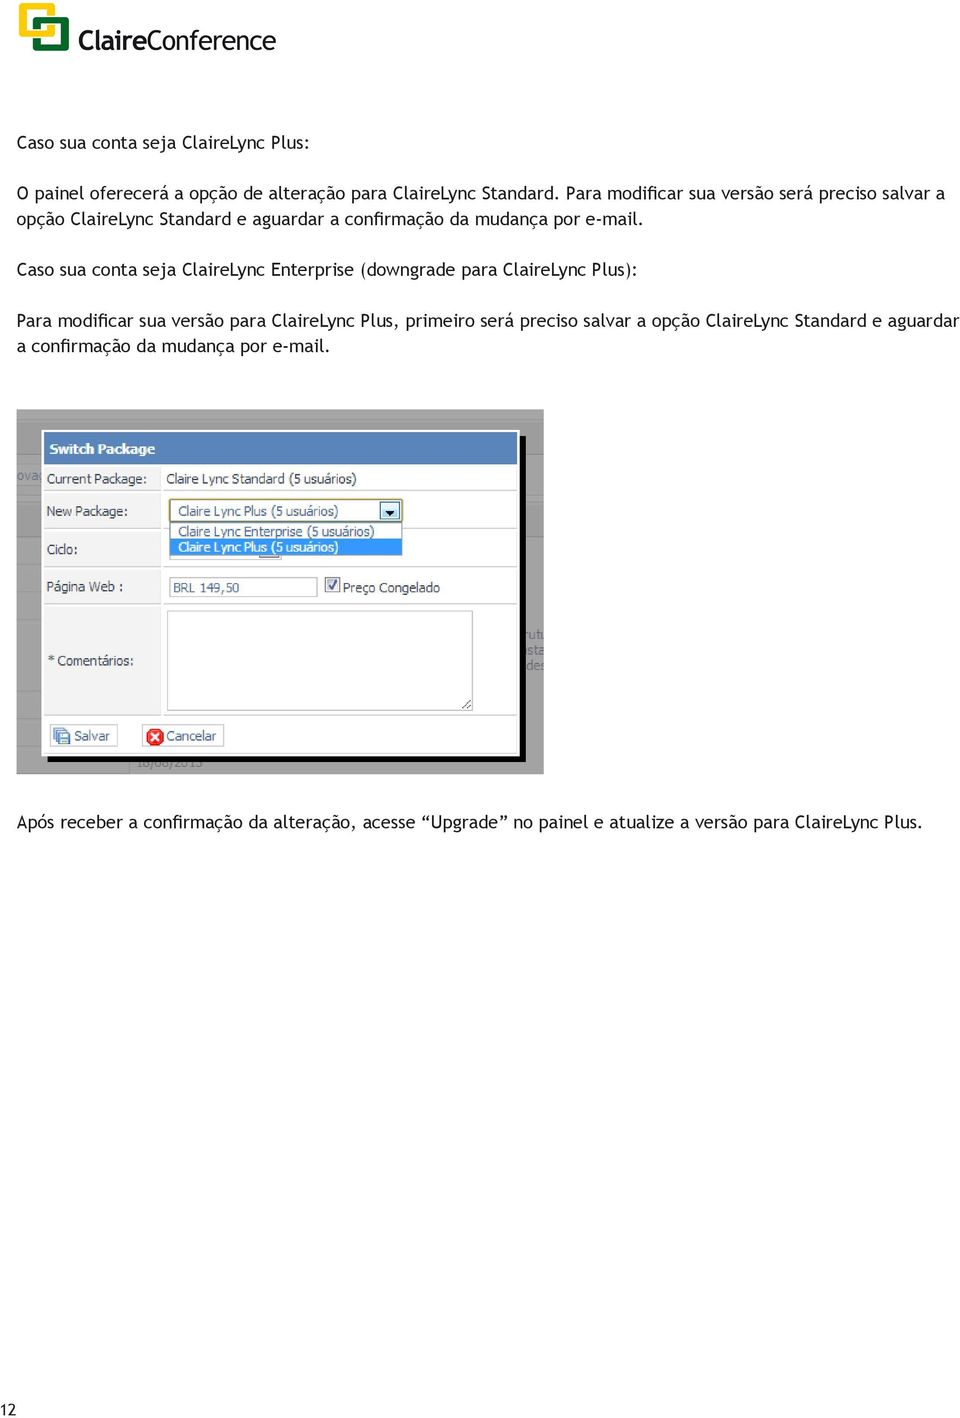 Caso sua conta seja ClaireLync Enterprise (downgrade para ClaireLync Plus): Para modificar sua versão para ClaireLync Plus, primeiro será